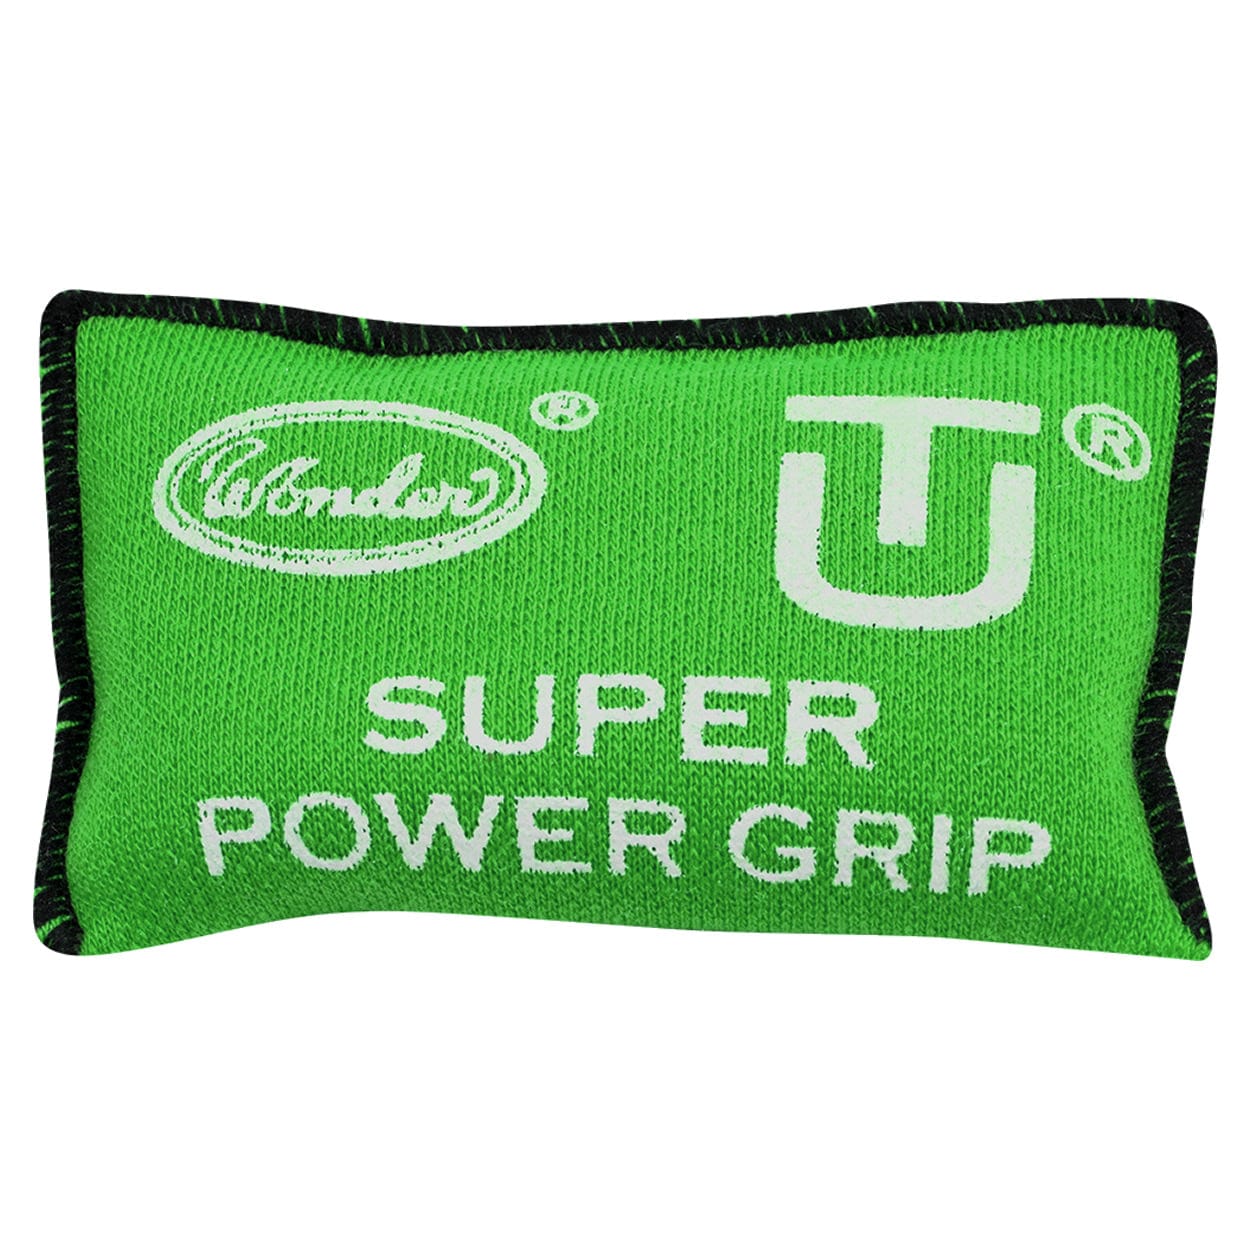 Designa Super Power Grip Bag - For Better Grip Dart Control - Absorbs Moisture Green